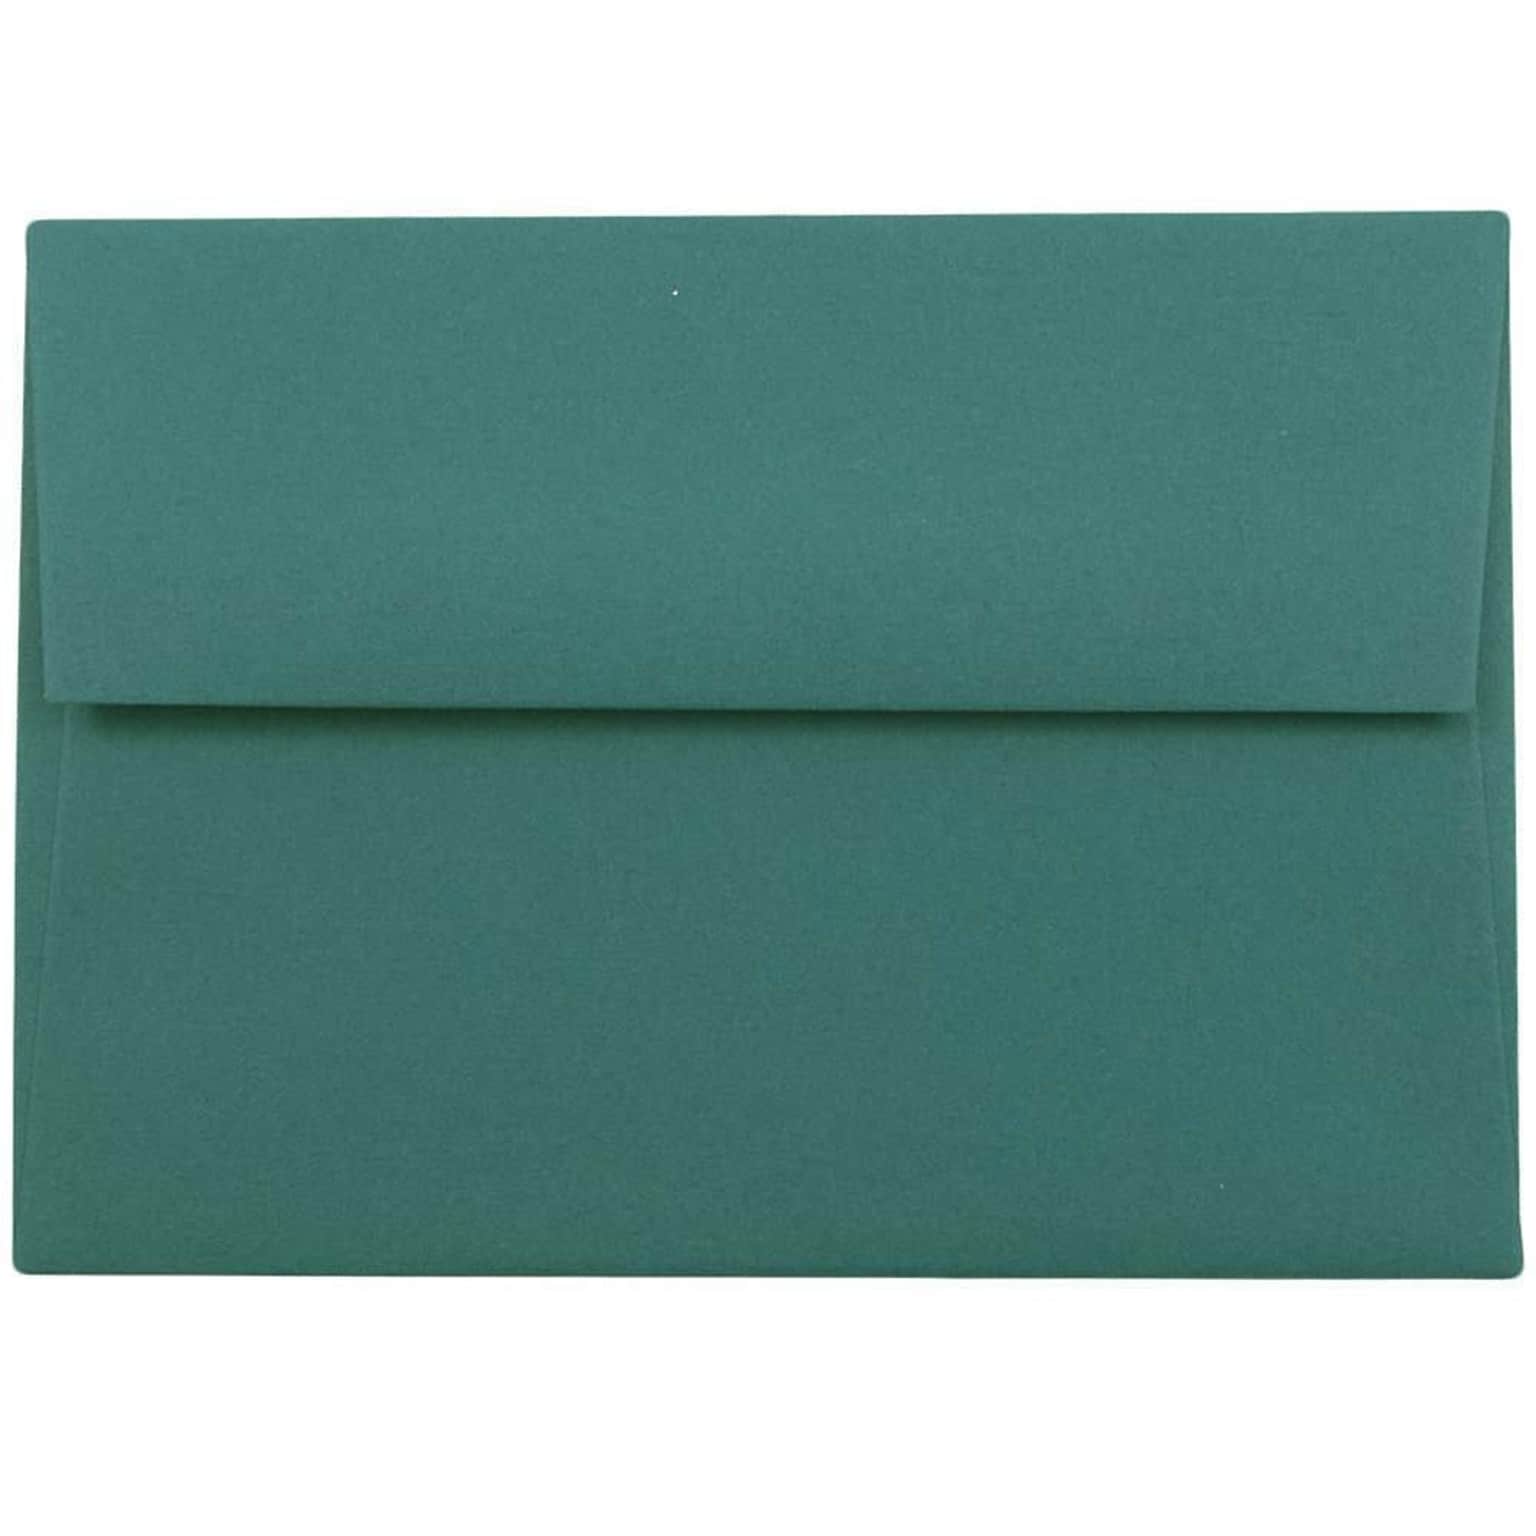 JAM Paper 4Bar A1 Invitation Envelopes, 3.625 x 5.125, Teal, 50/Pack (5157435i)